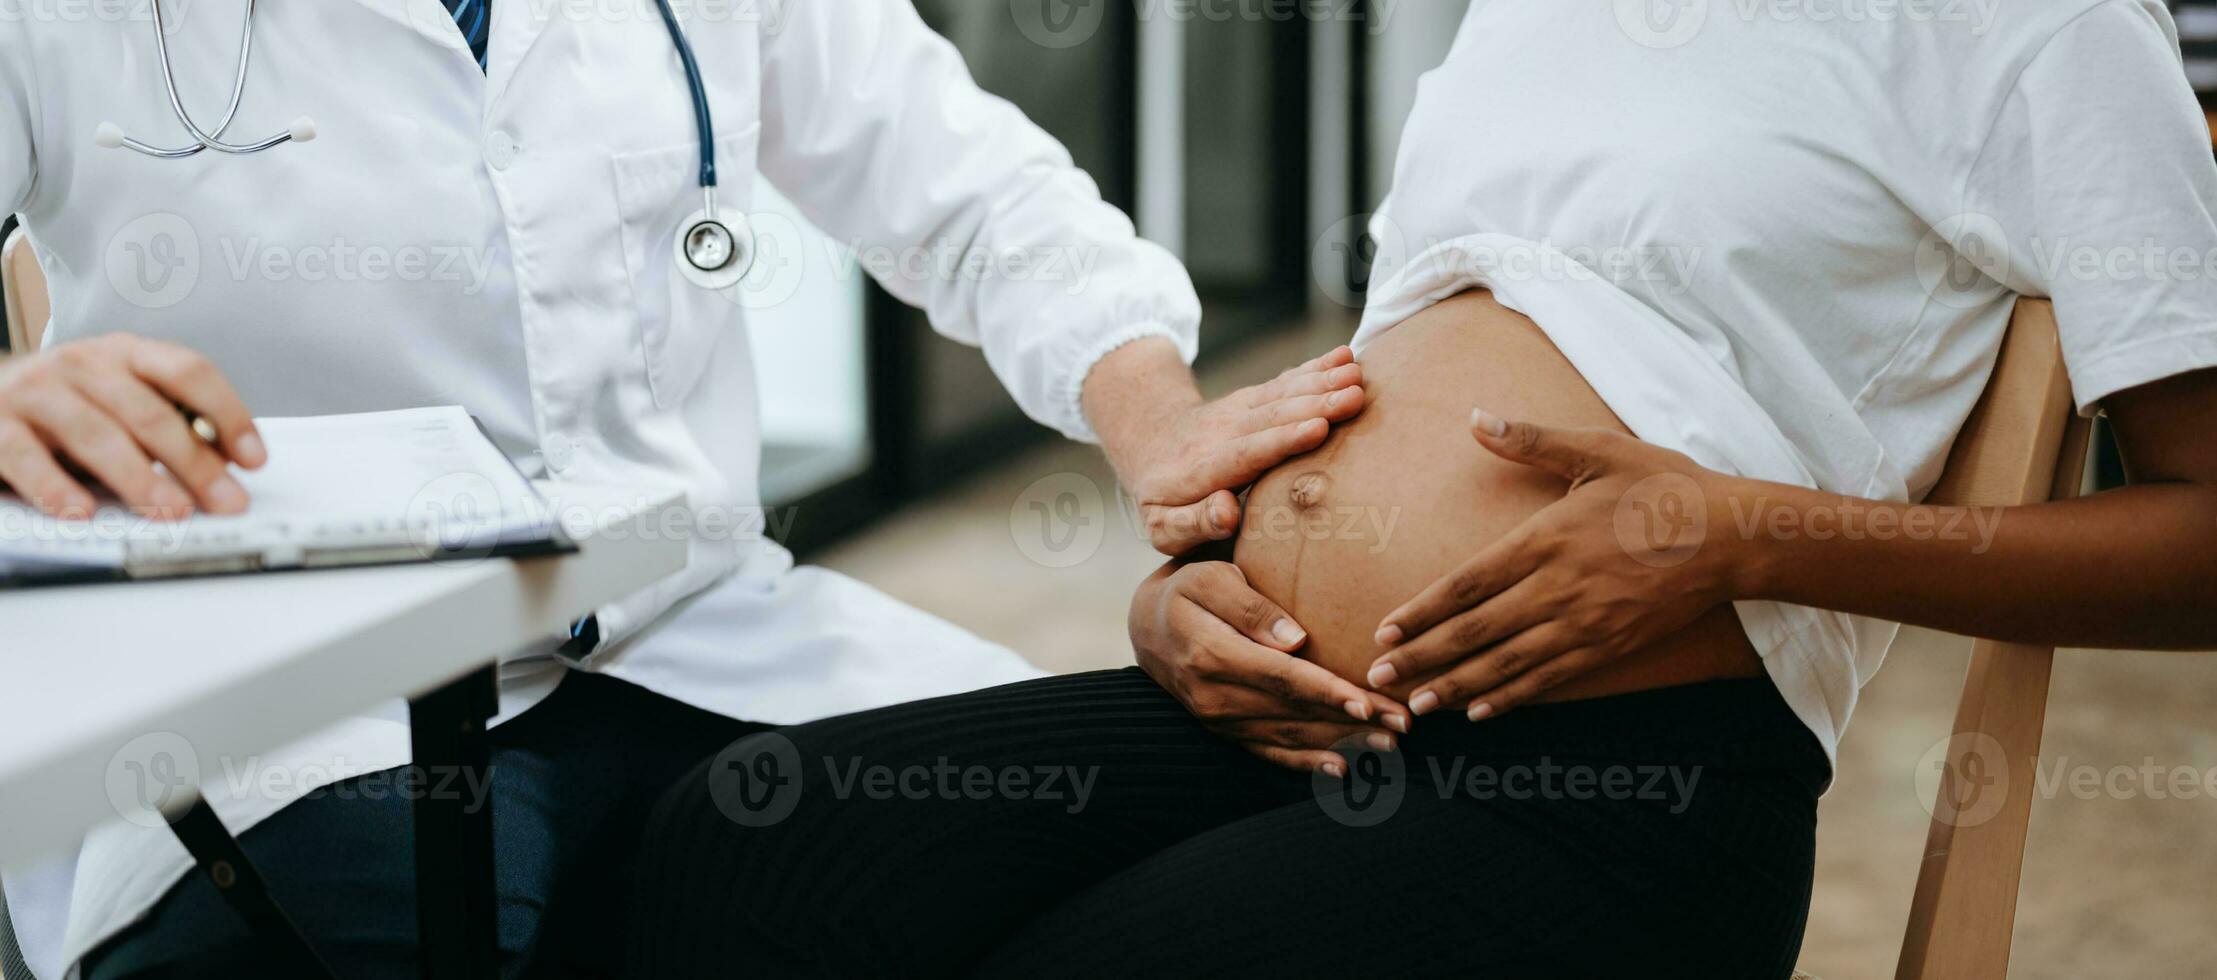 https://static.vecteezy.com/ti/photos-gratuite/p1/27724907-enceinte-africain-femme-a-rendez-vous-avec-medecin-a-clinique-masculin-gynecologue-ob-gynecologue-medical-specialiste-avec-stethoscope-ecoute-a-de-bebe-battement-de-coeur-dans-de-la-mere-ventre-grossesse-sante-se-soucier-photo.jpg